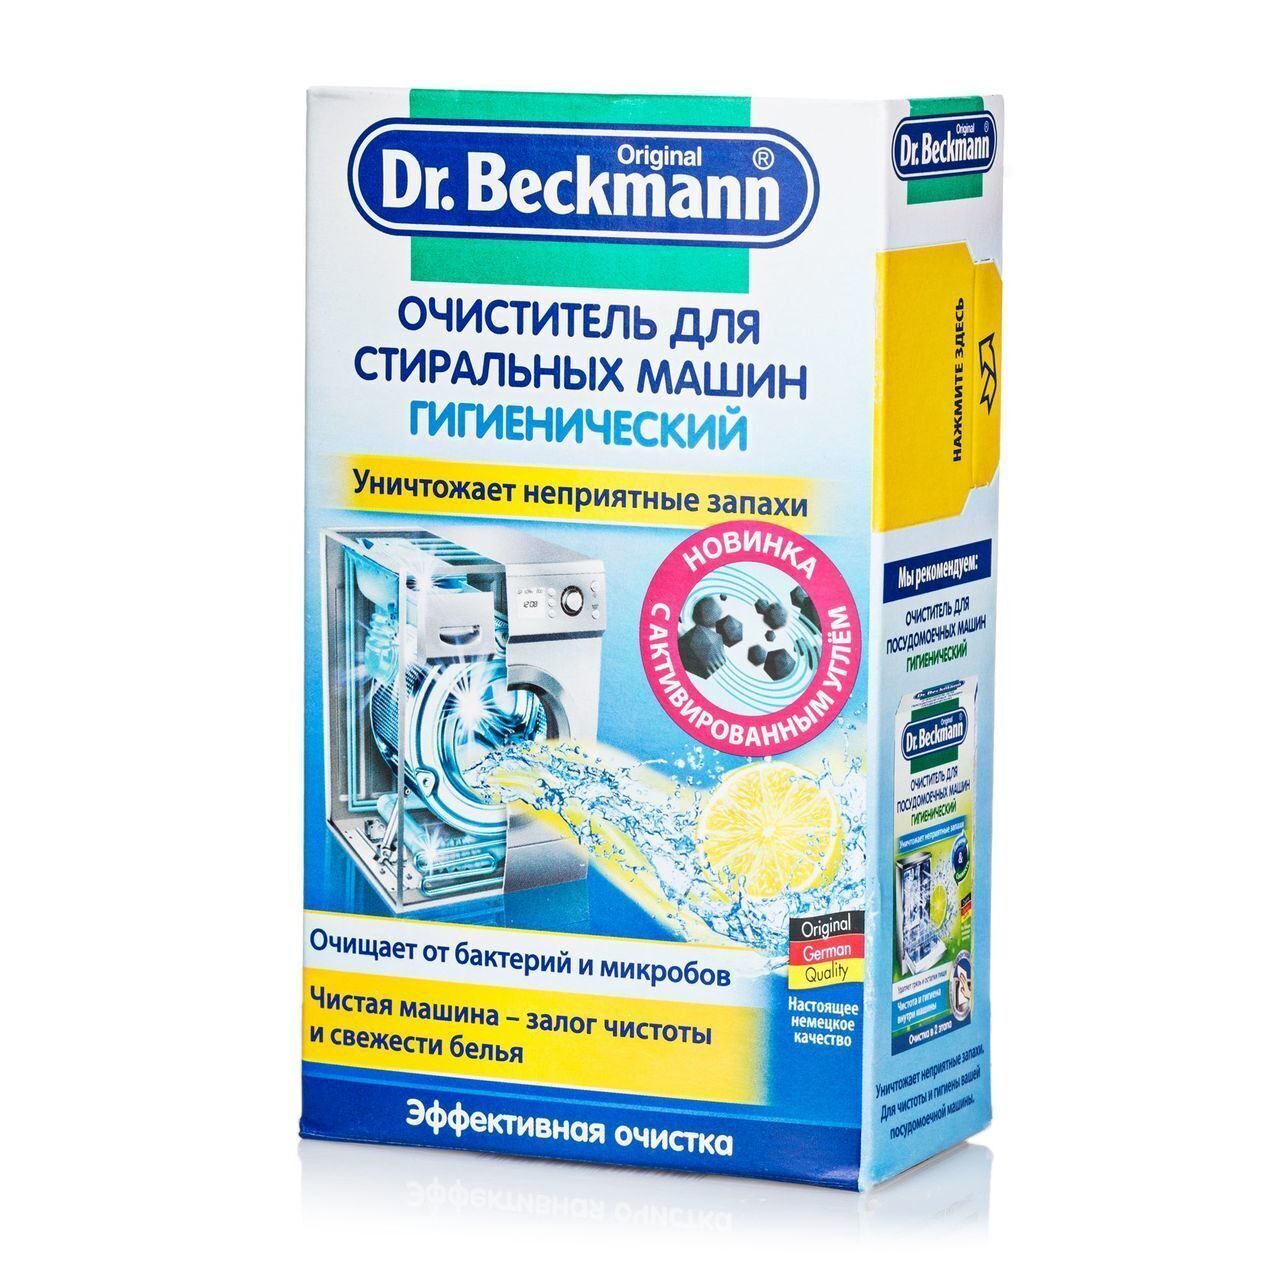 Средство для чистки машинки. Очиститель для стиральных машин ""Dr.Beckmann"" 250. Dr Beckmann очиститель для стиральных. Dr. Beckmann очиститель для стиральных машин (гигиенический), 250 г. Dr Beckmann для стиральных машин 250.